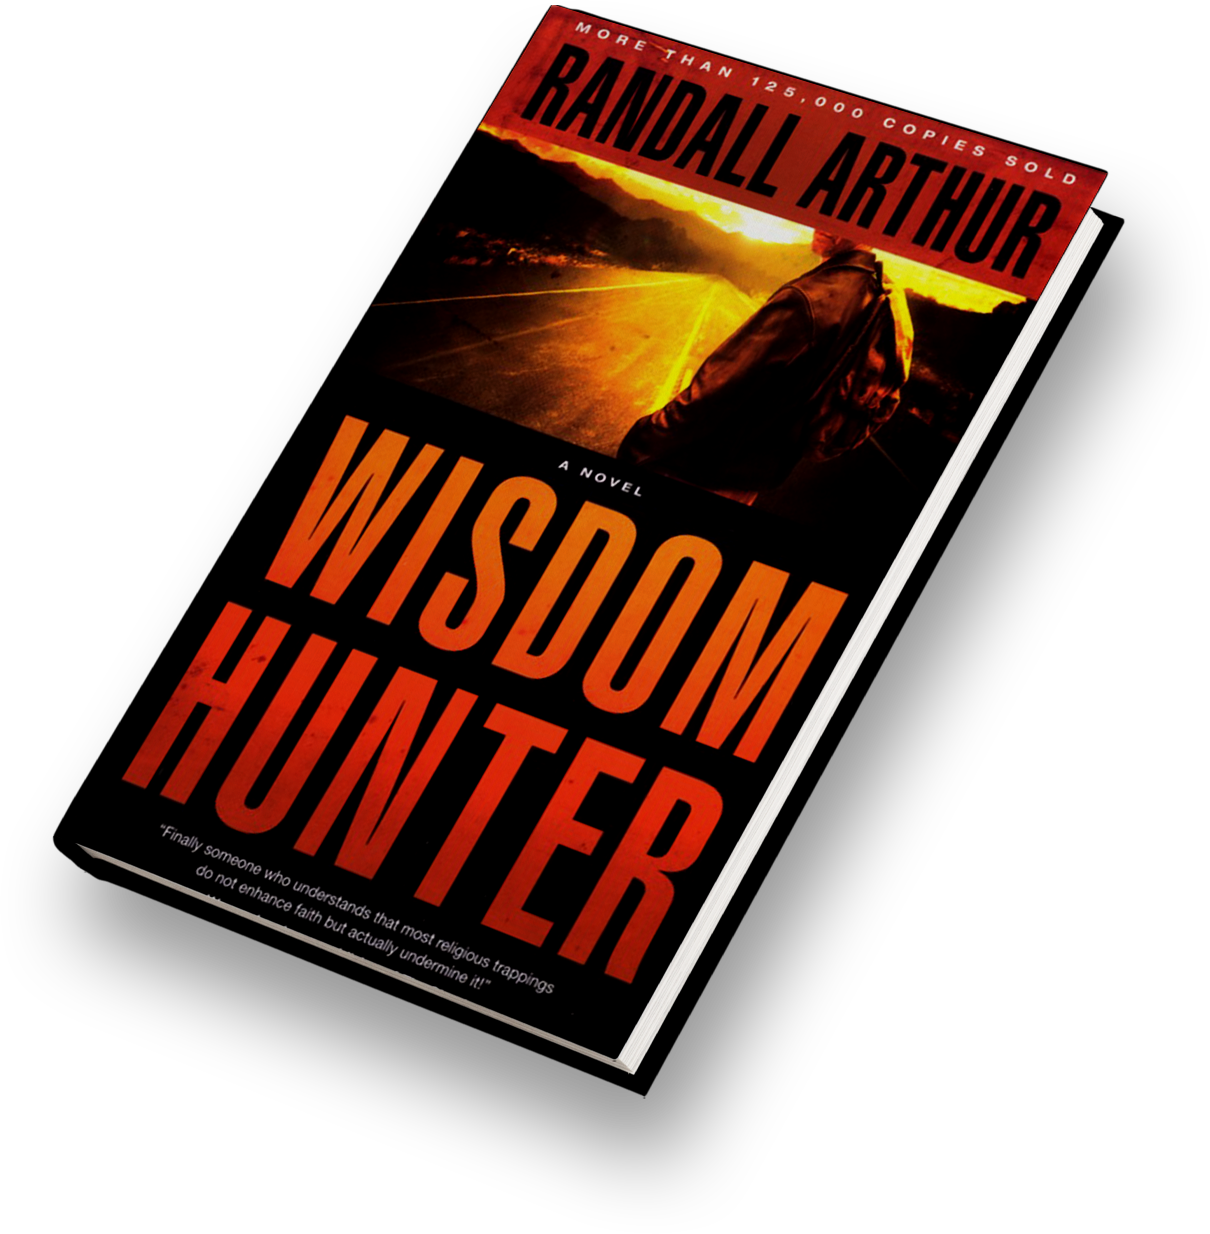 Wisdom Hunter - Randall Arthur